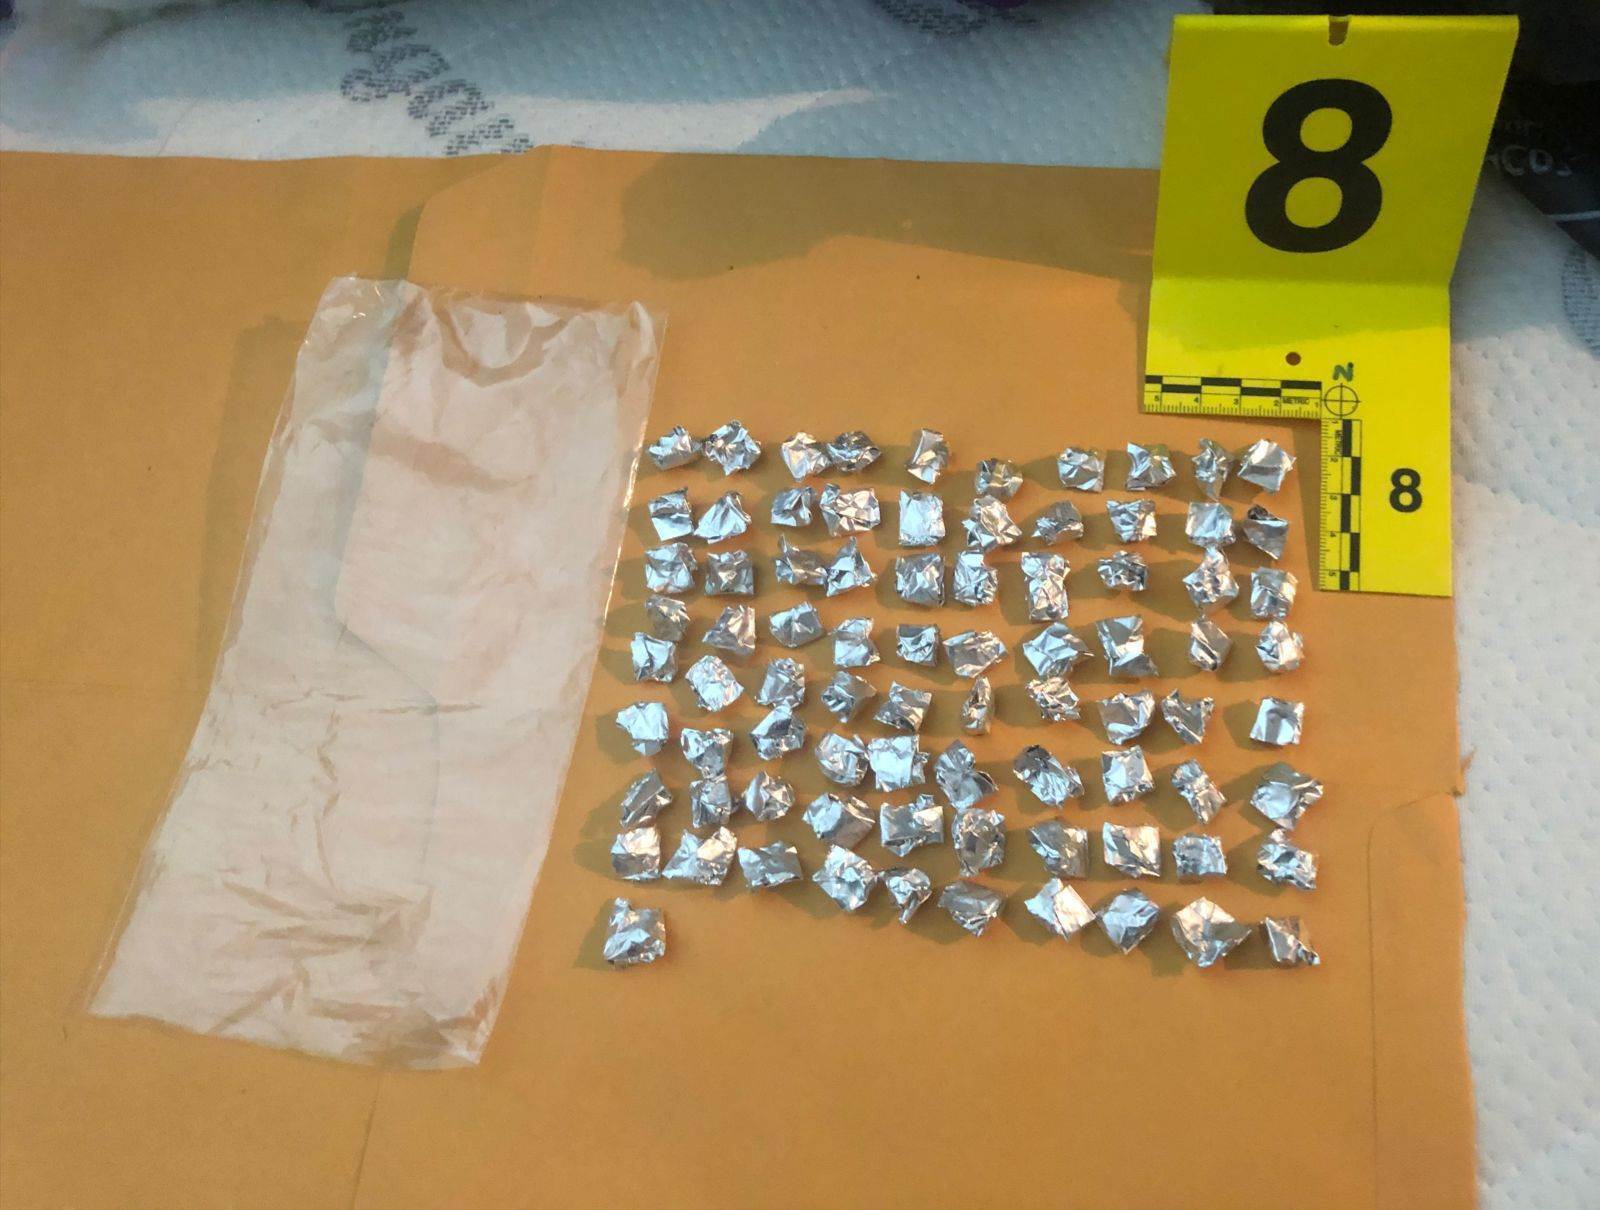 Más de 140 envoltorios de droga asegurados, dos armas de fuego, así como un detenido, fue el resultado del cateo